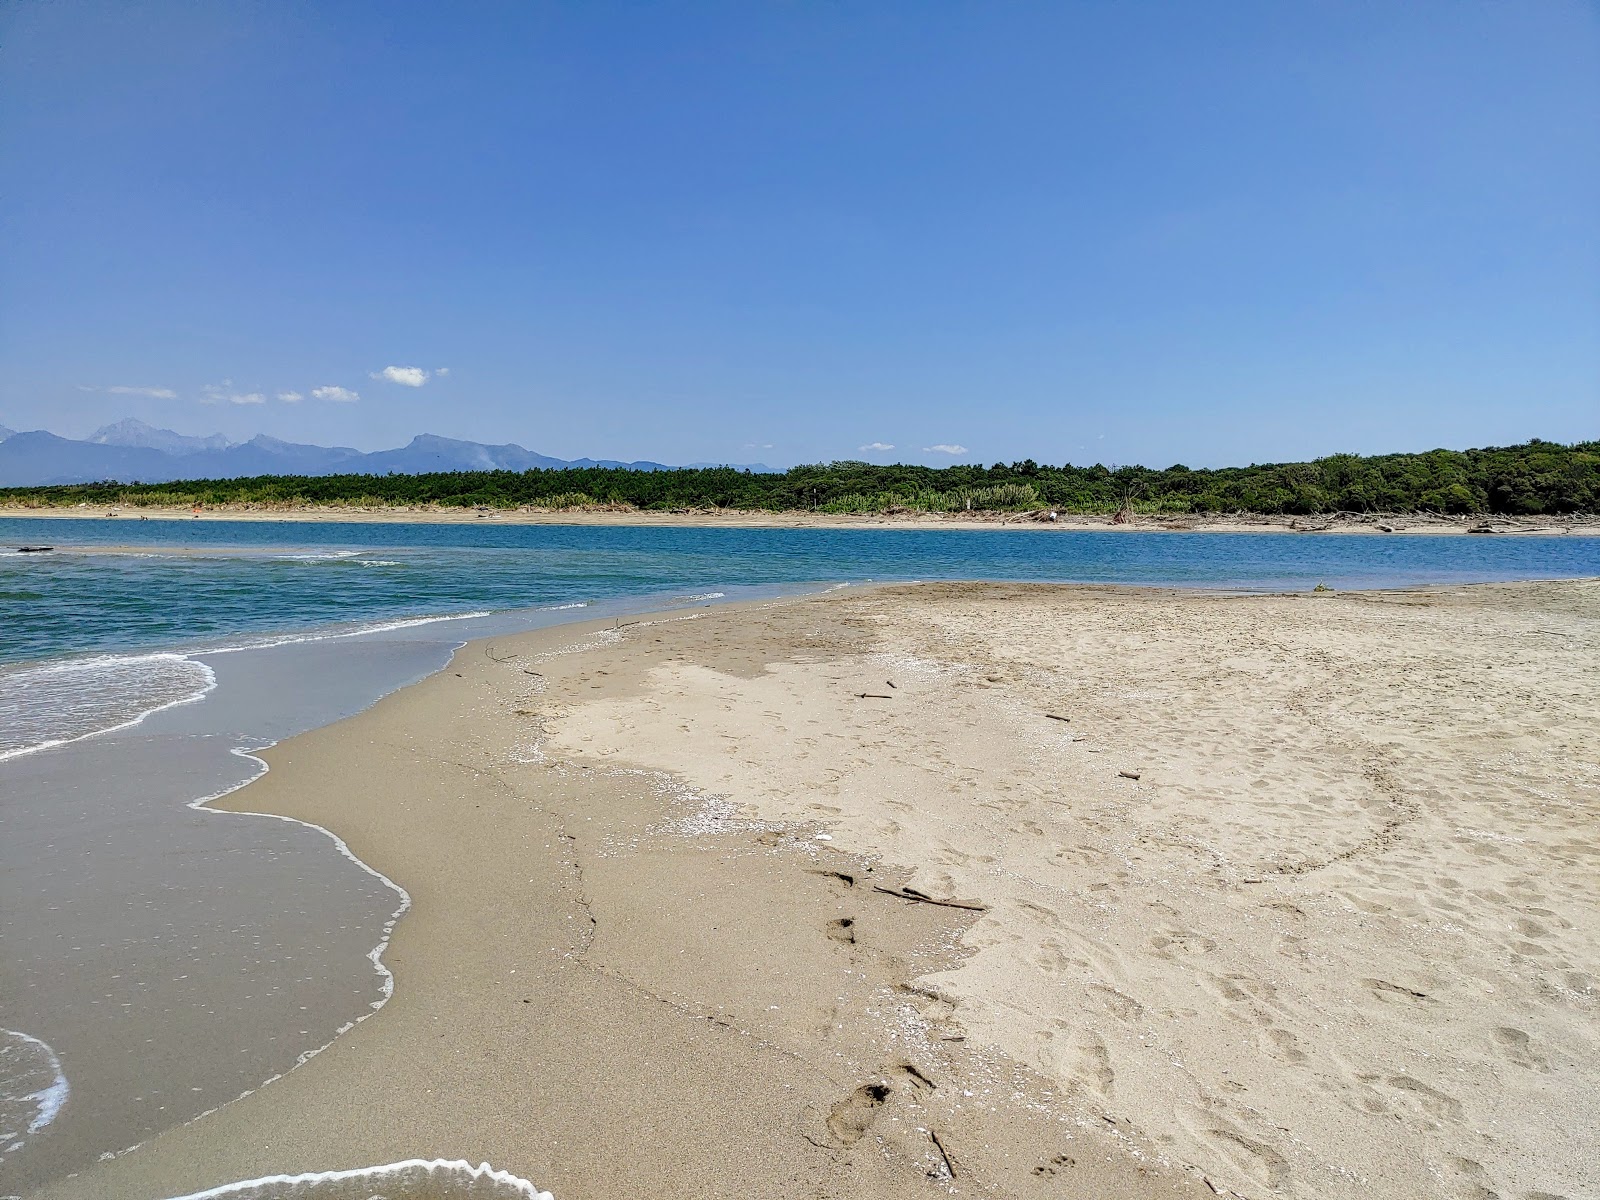 Zdjęcie Serchio beach z powierzchnią jasny piasek